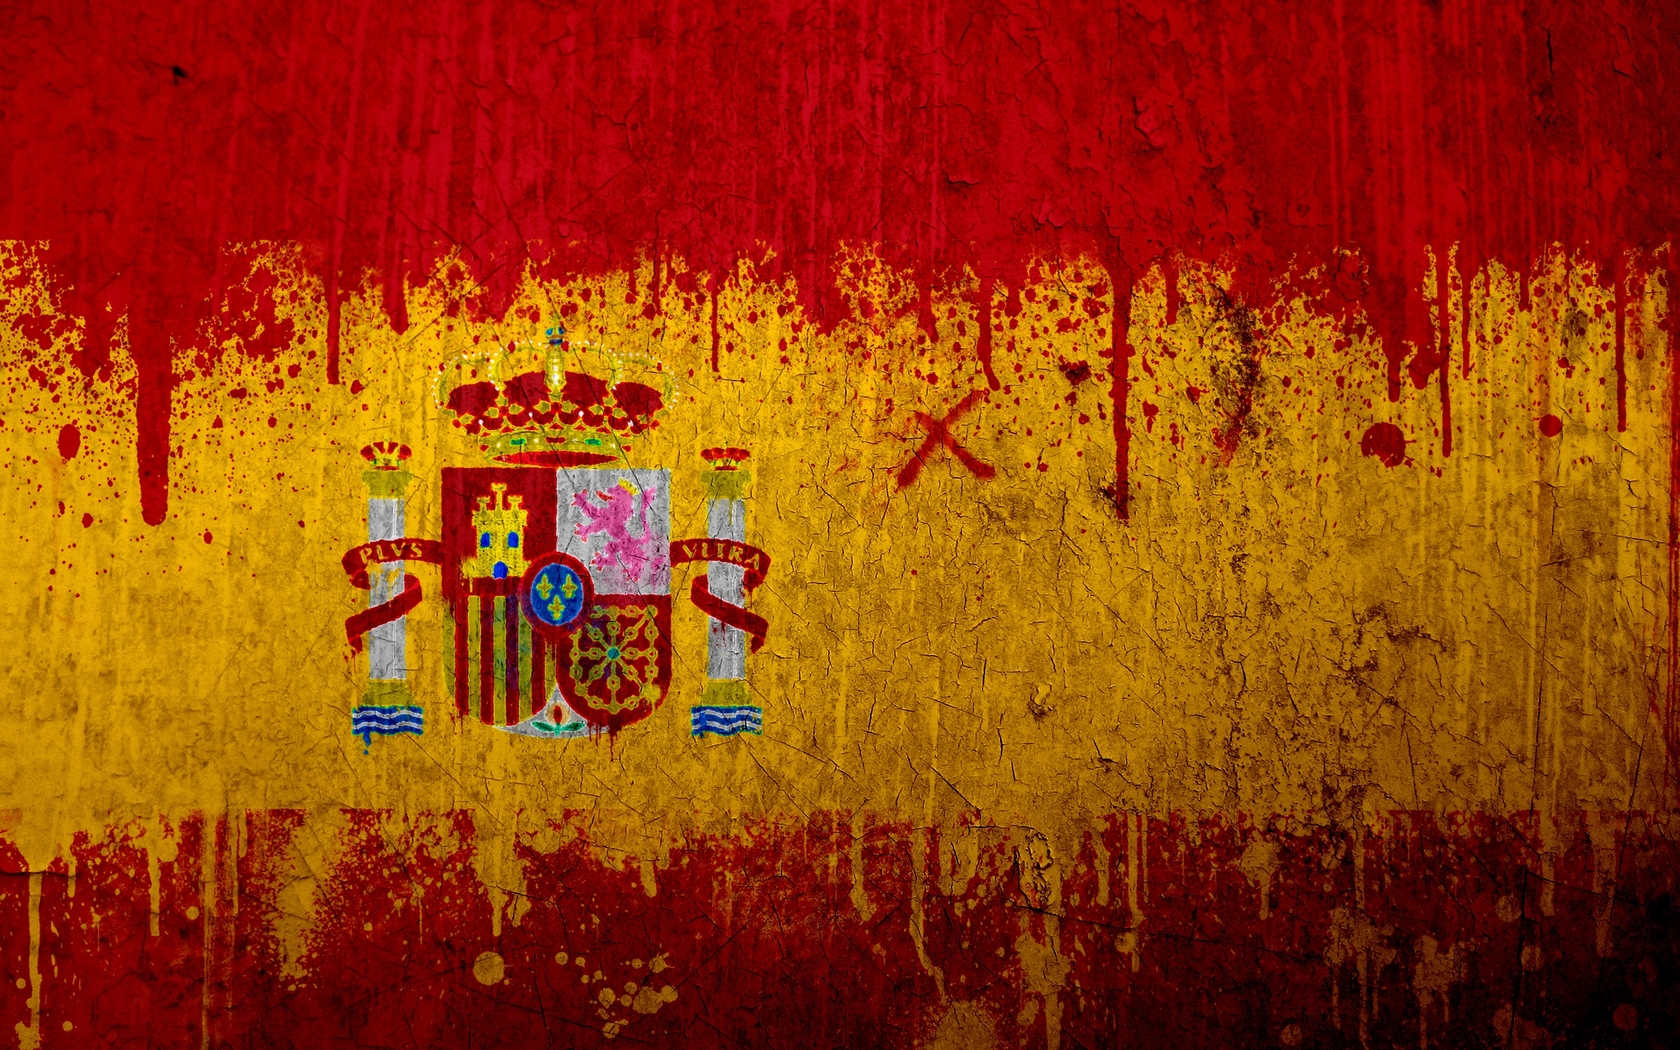 Spanish Flag Image